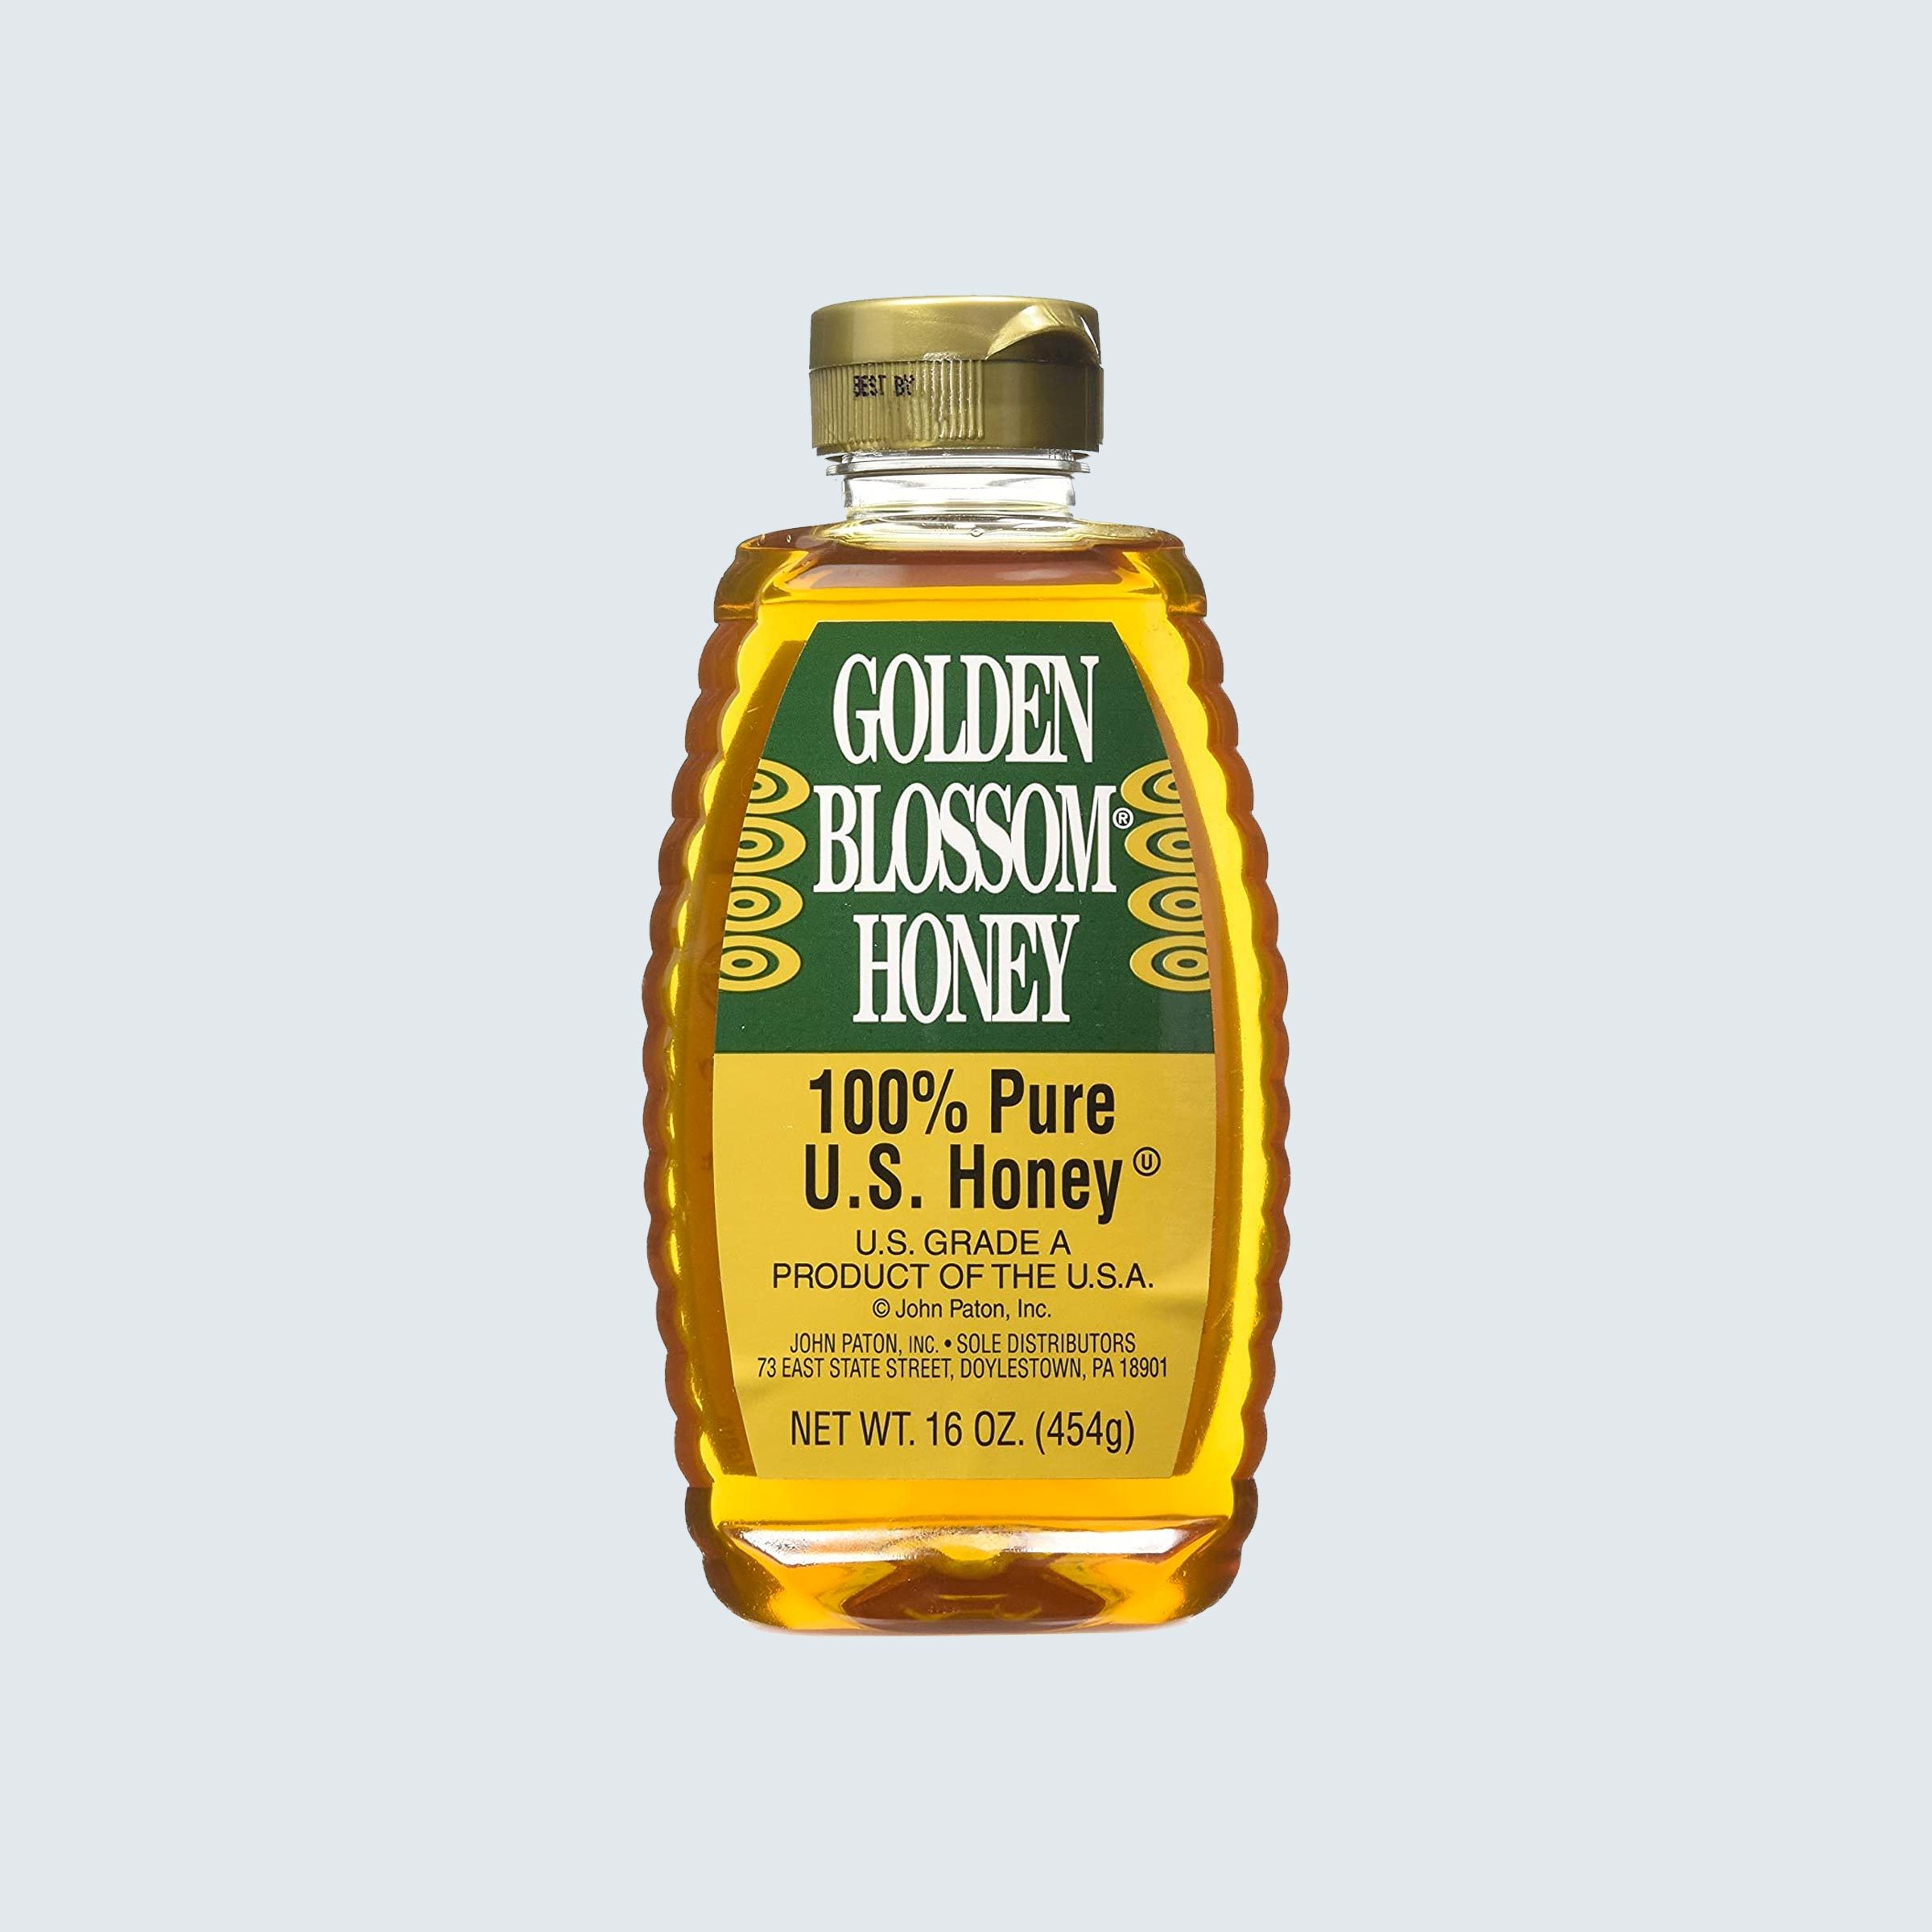 https://www.rd.com/wp-content/uploads/2020/06/44_Golden-Blossom-Honey.jpg